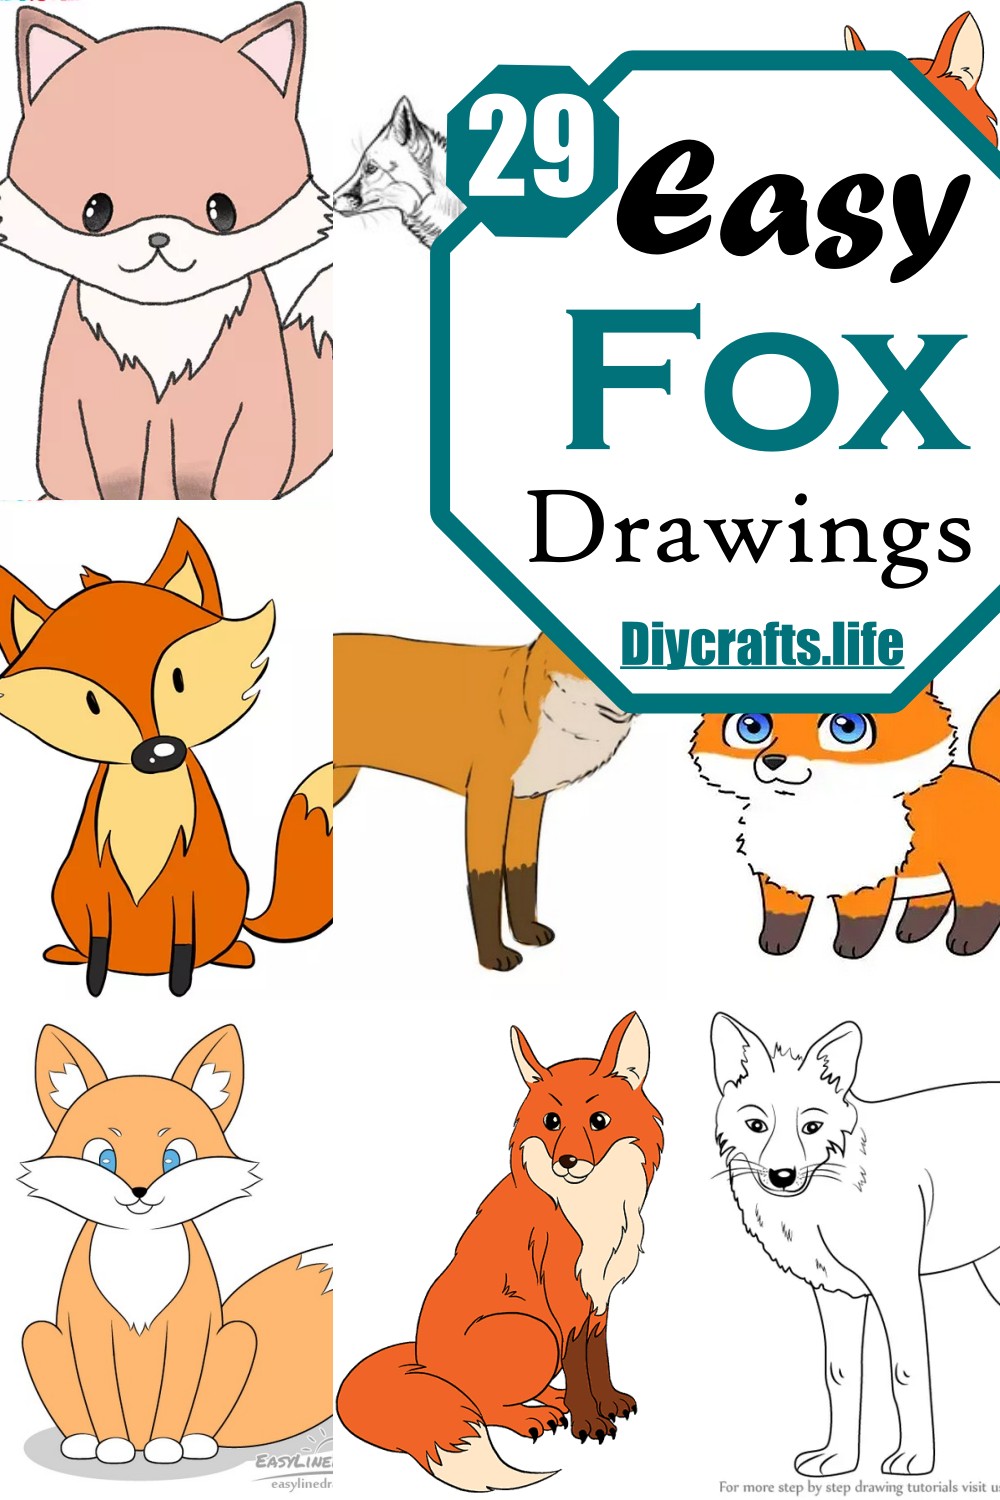 Easy Fox Drawings